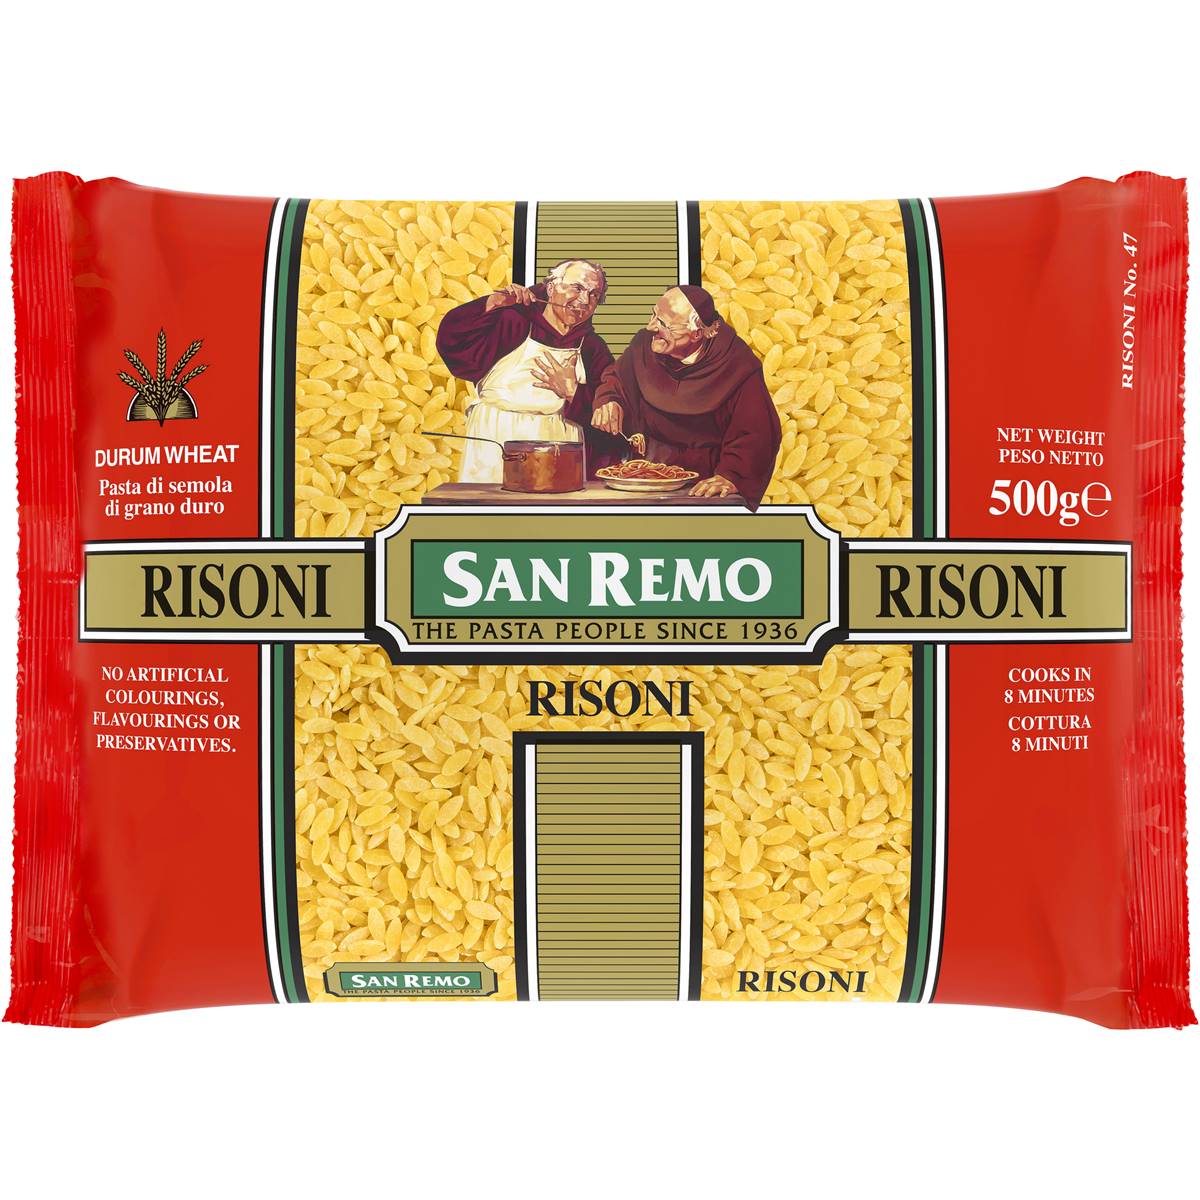 San Remo Risoni Pasta